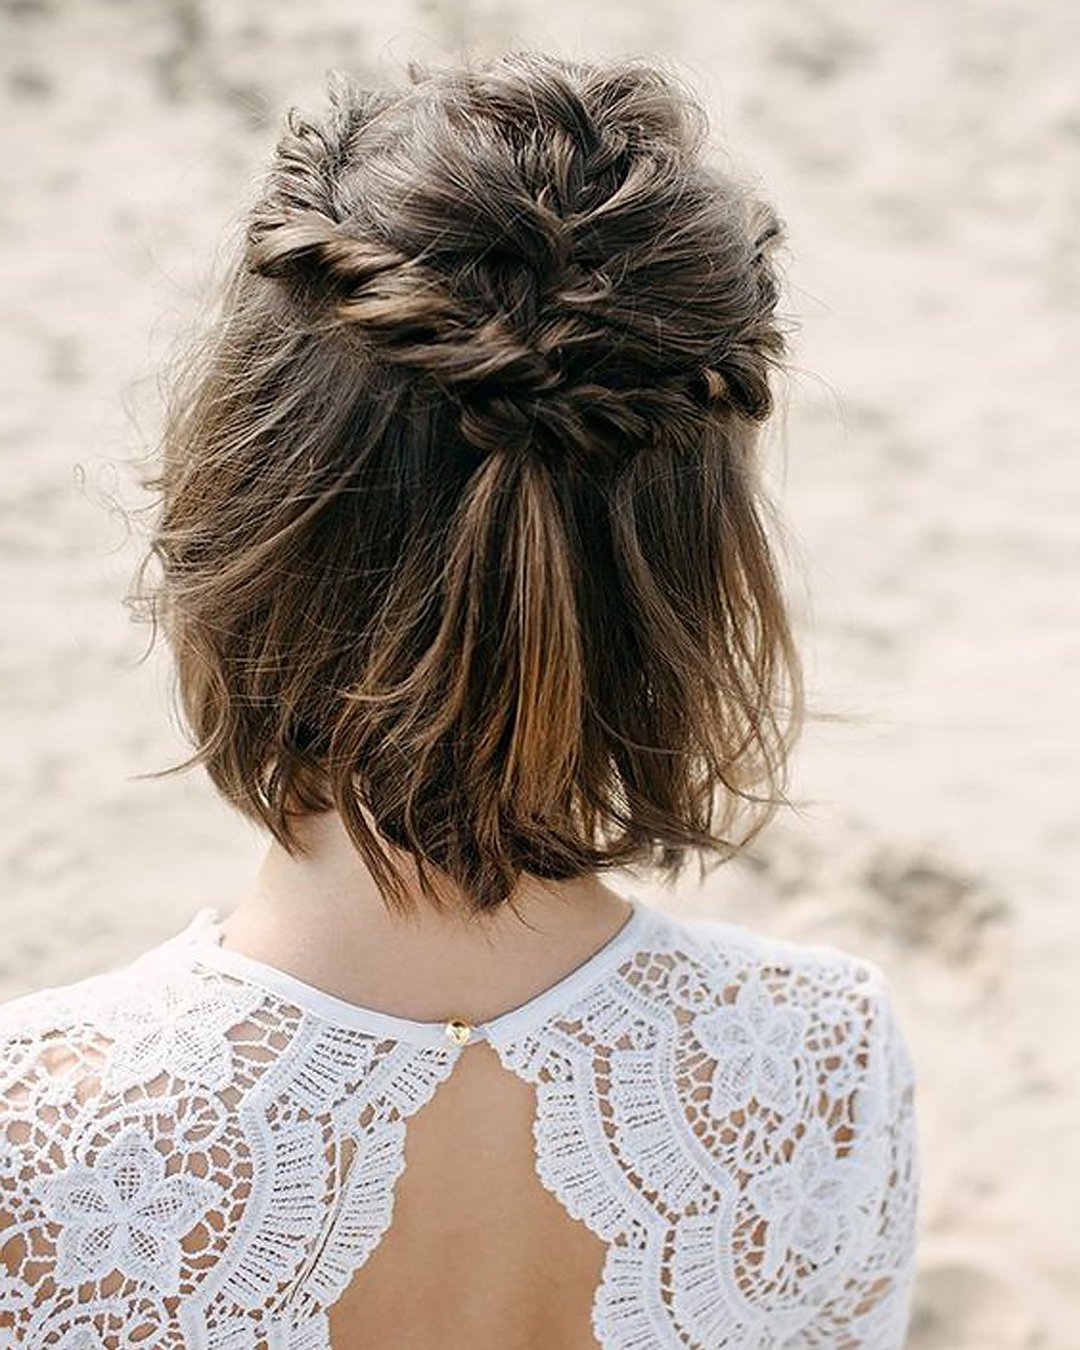 11 DIY Wedding Hairstyles for Bridesmaids - Yeah Weddings